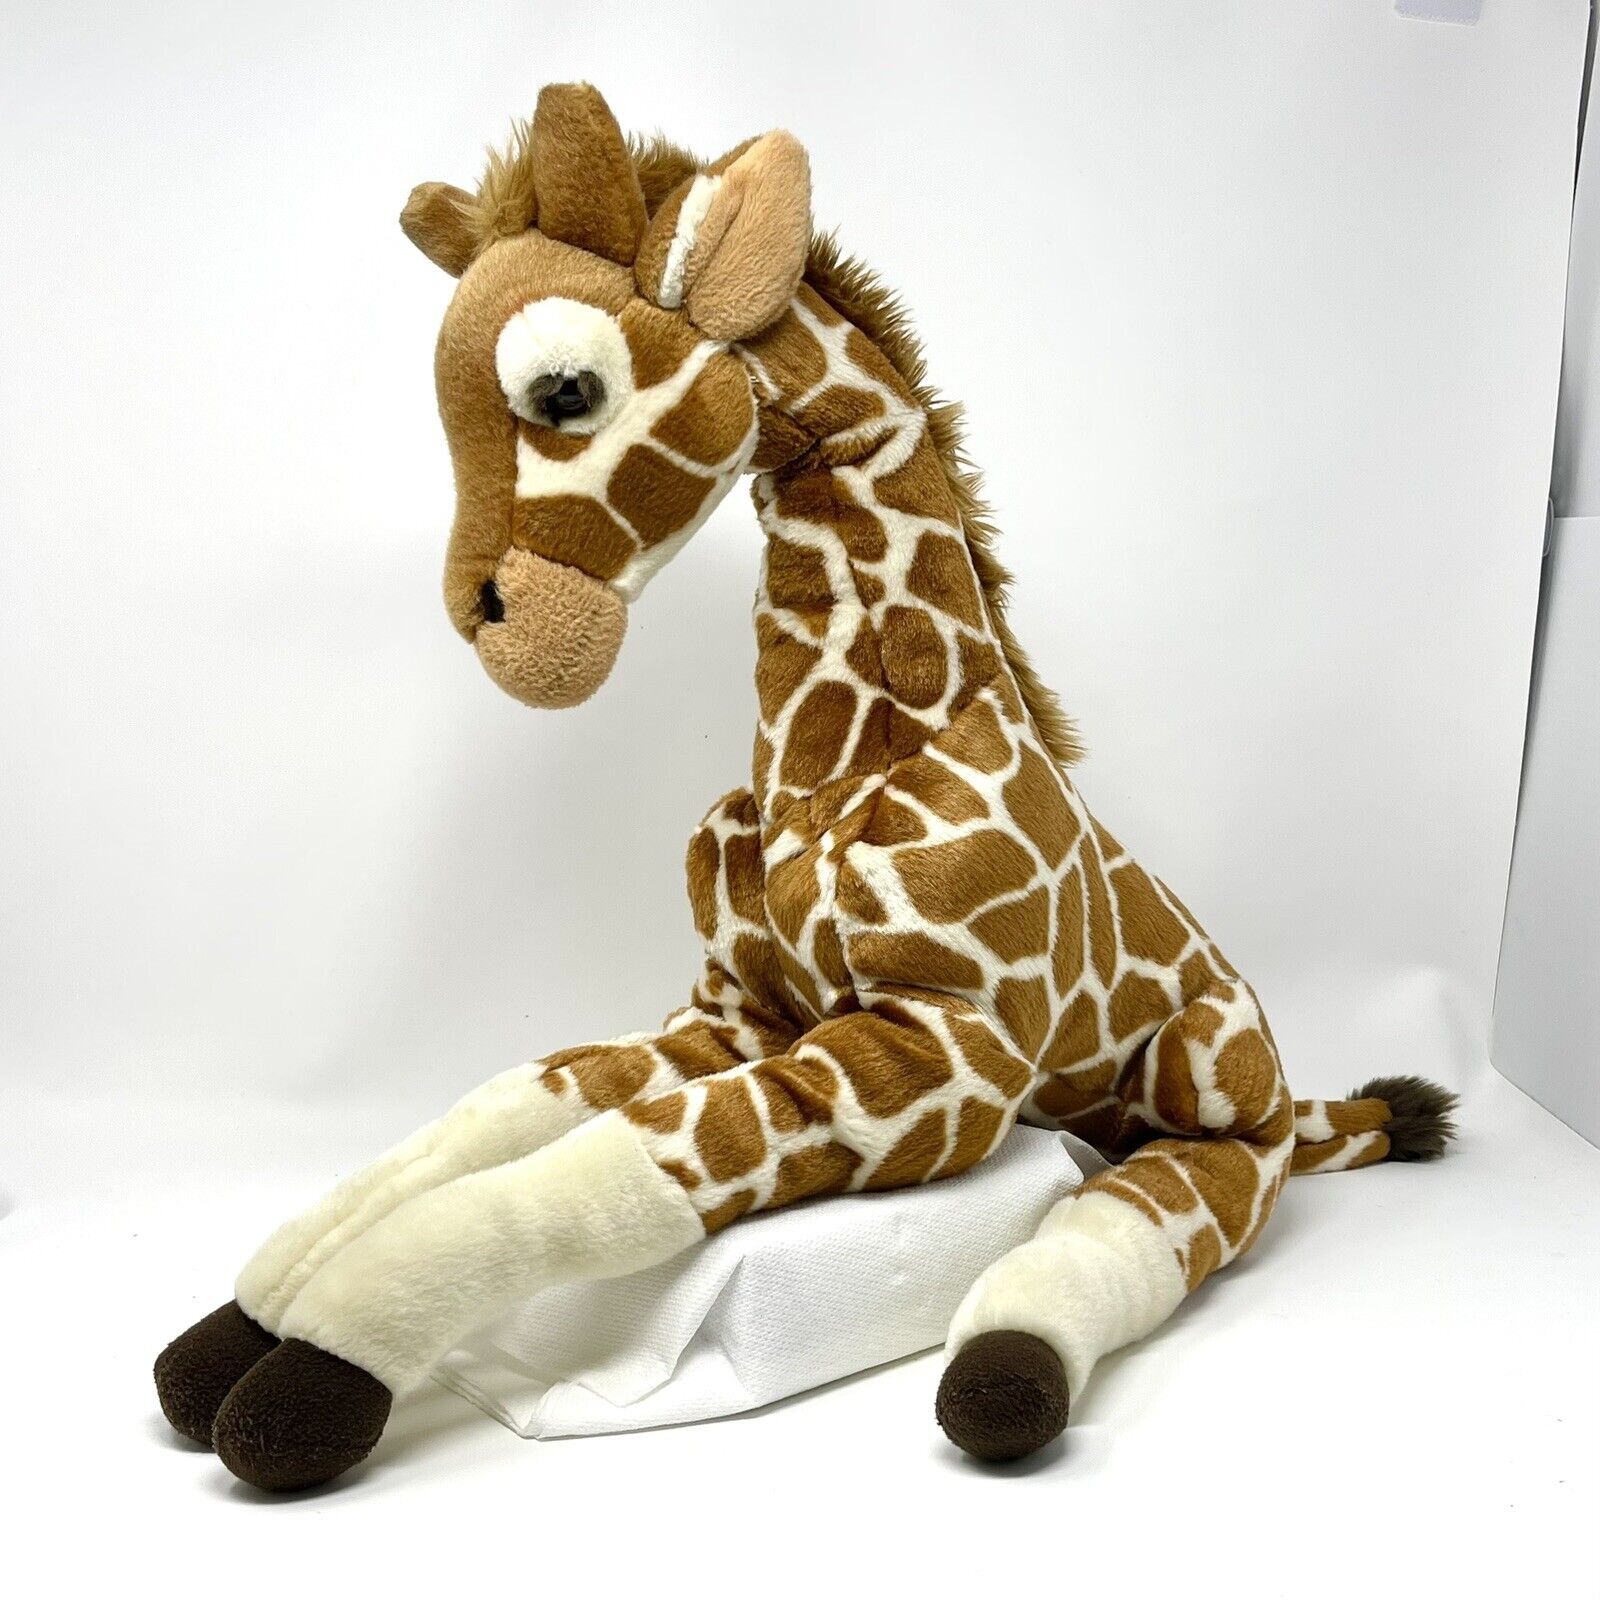 FAO Schwarz Large Giraffe Plush Toys R Us Geoffrey Toy Stuffed Animal 24 Inches